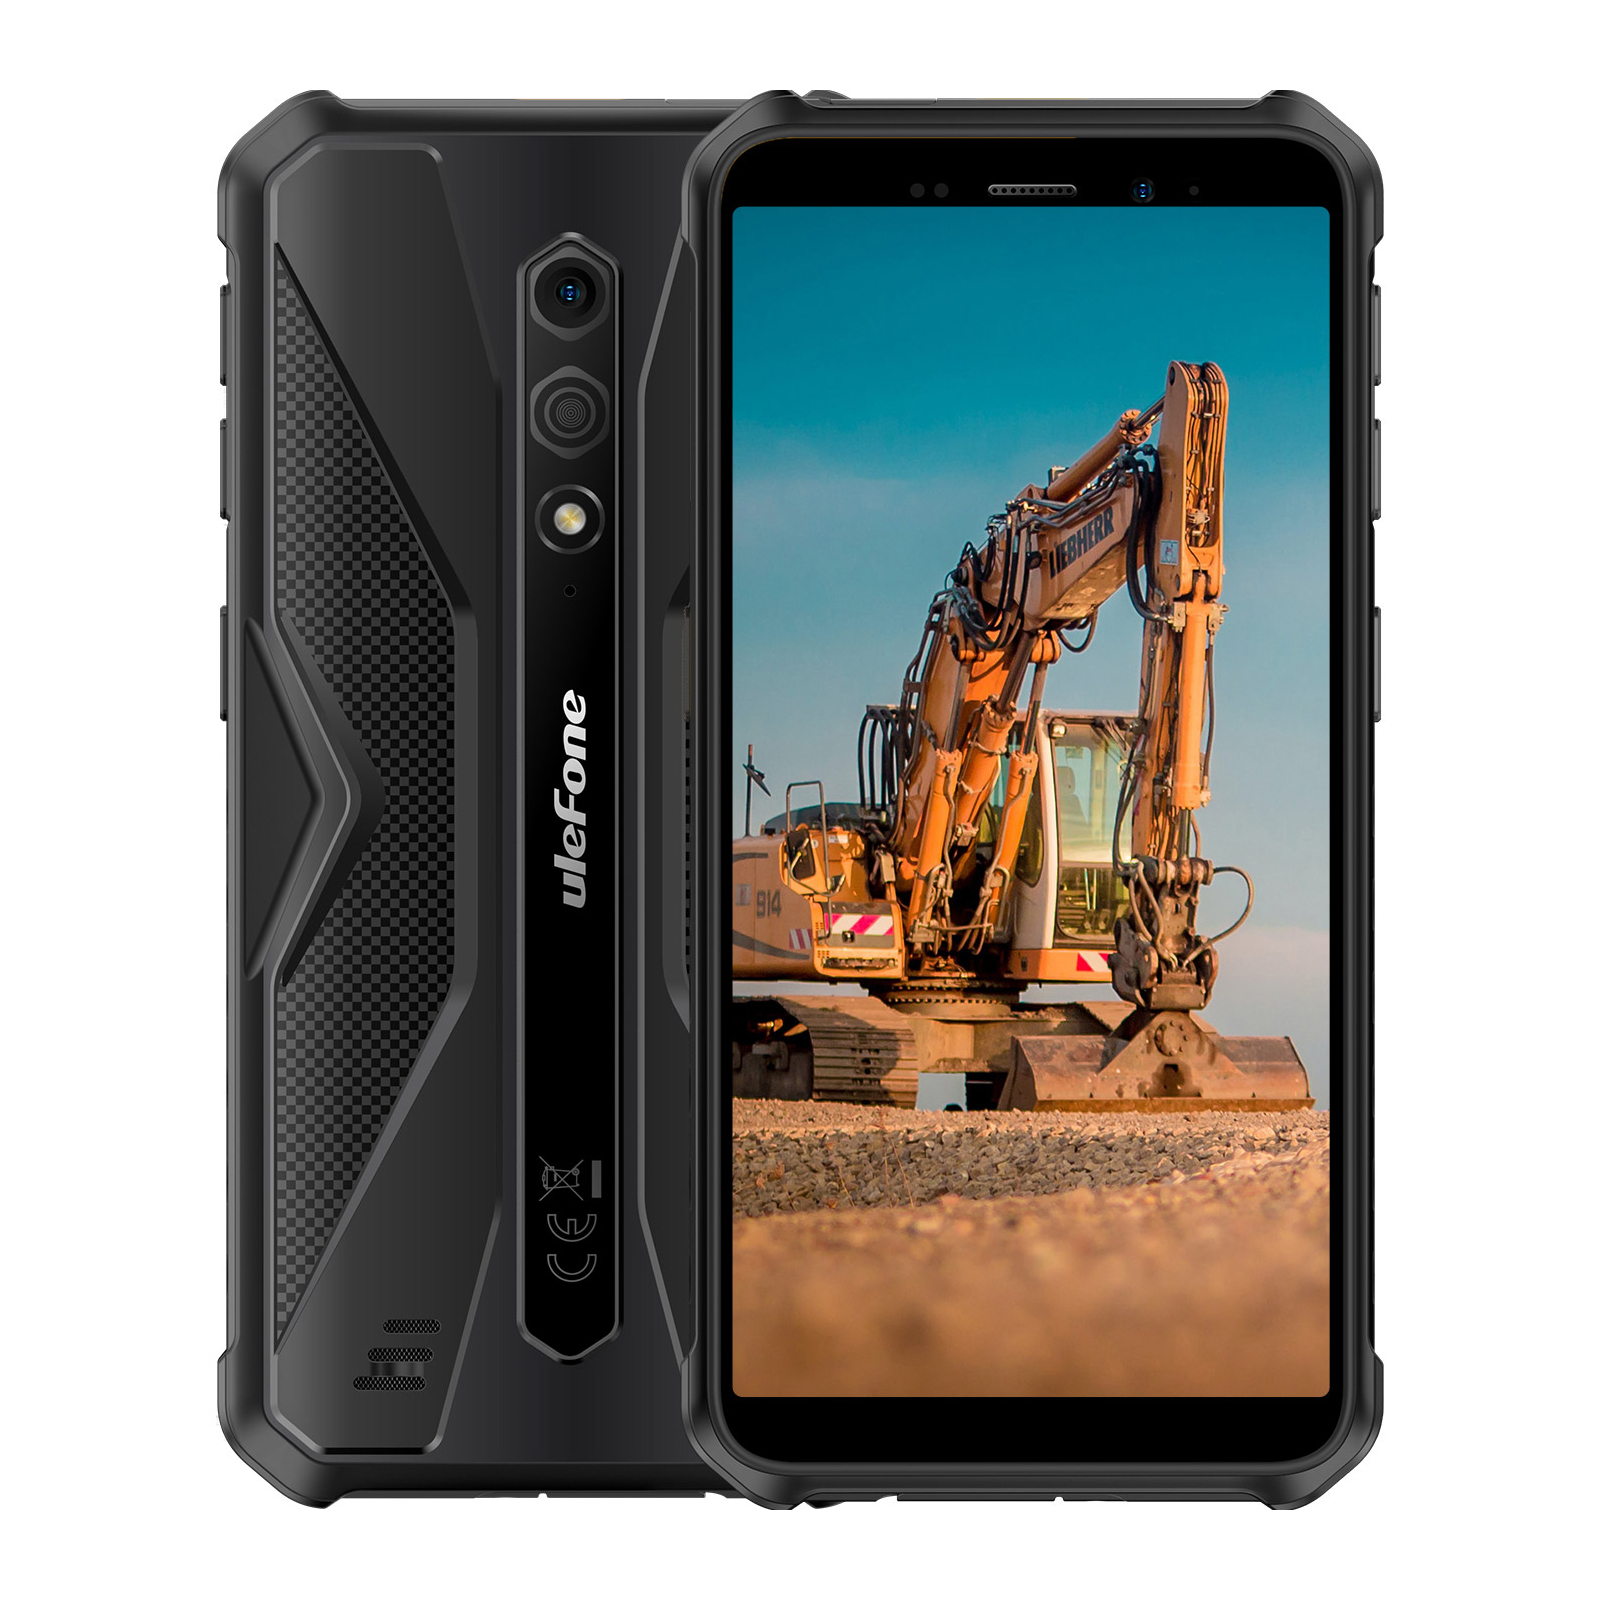 Мобильный телефон Ulefone Armor X12 3/32Gb Black Green (6937748735632)